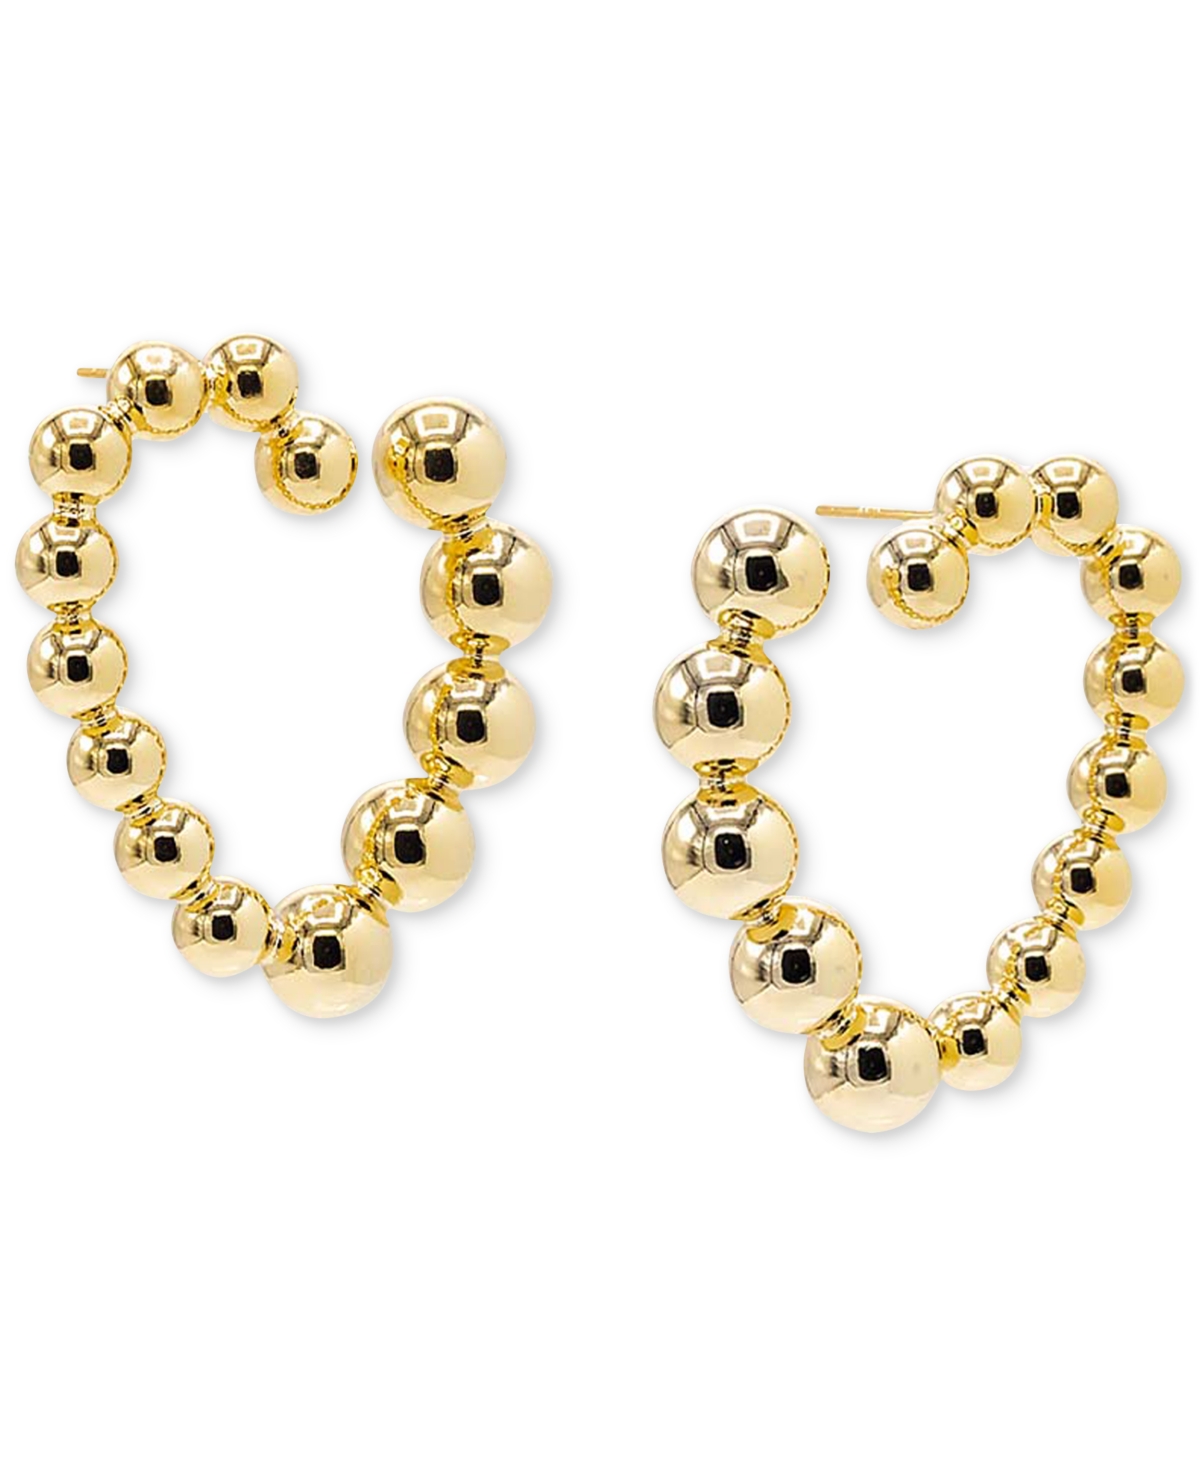 14k Gold-Plated Beaded Open Heart Drop Earrings - Gold